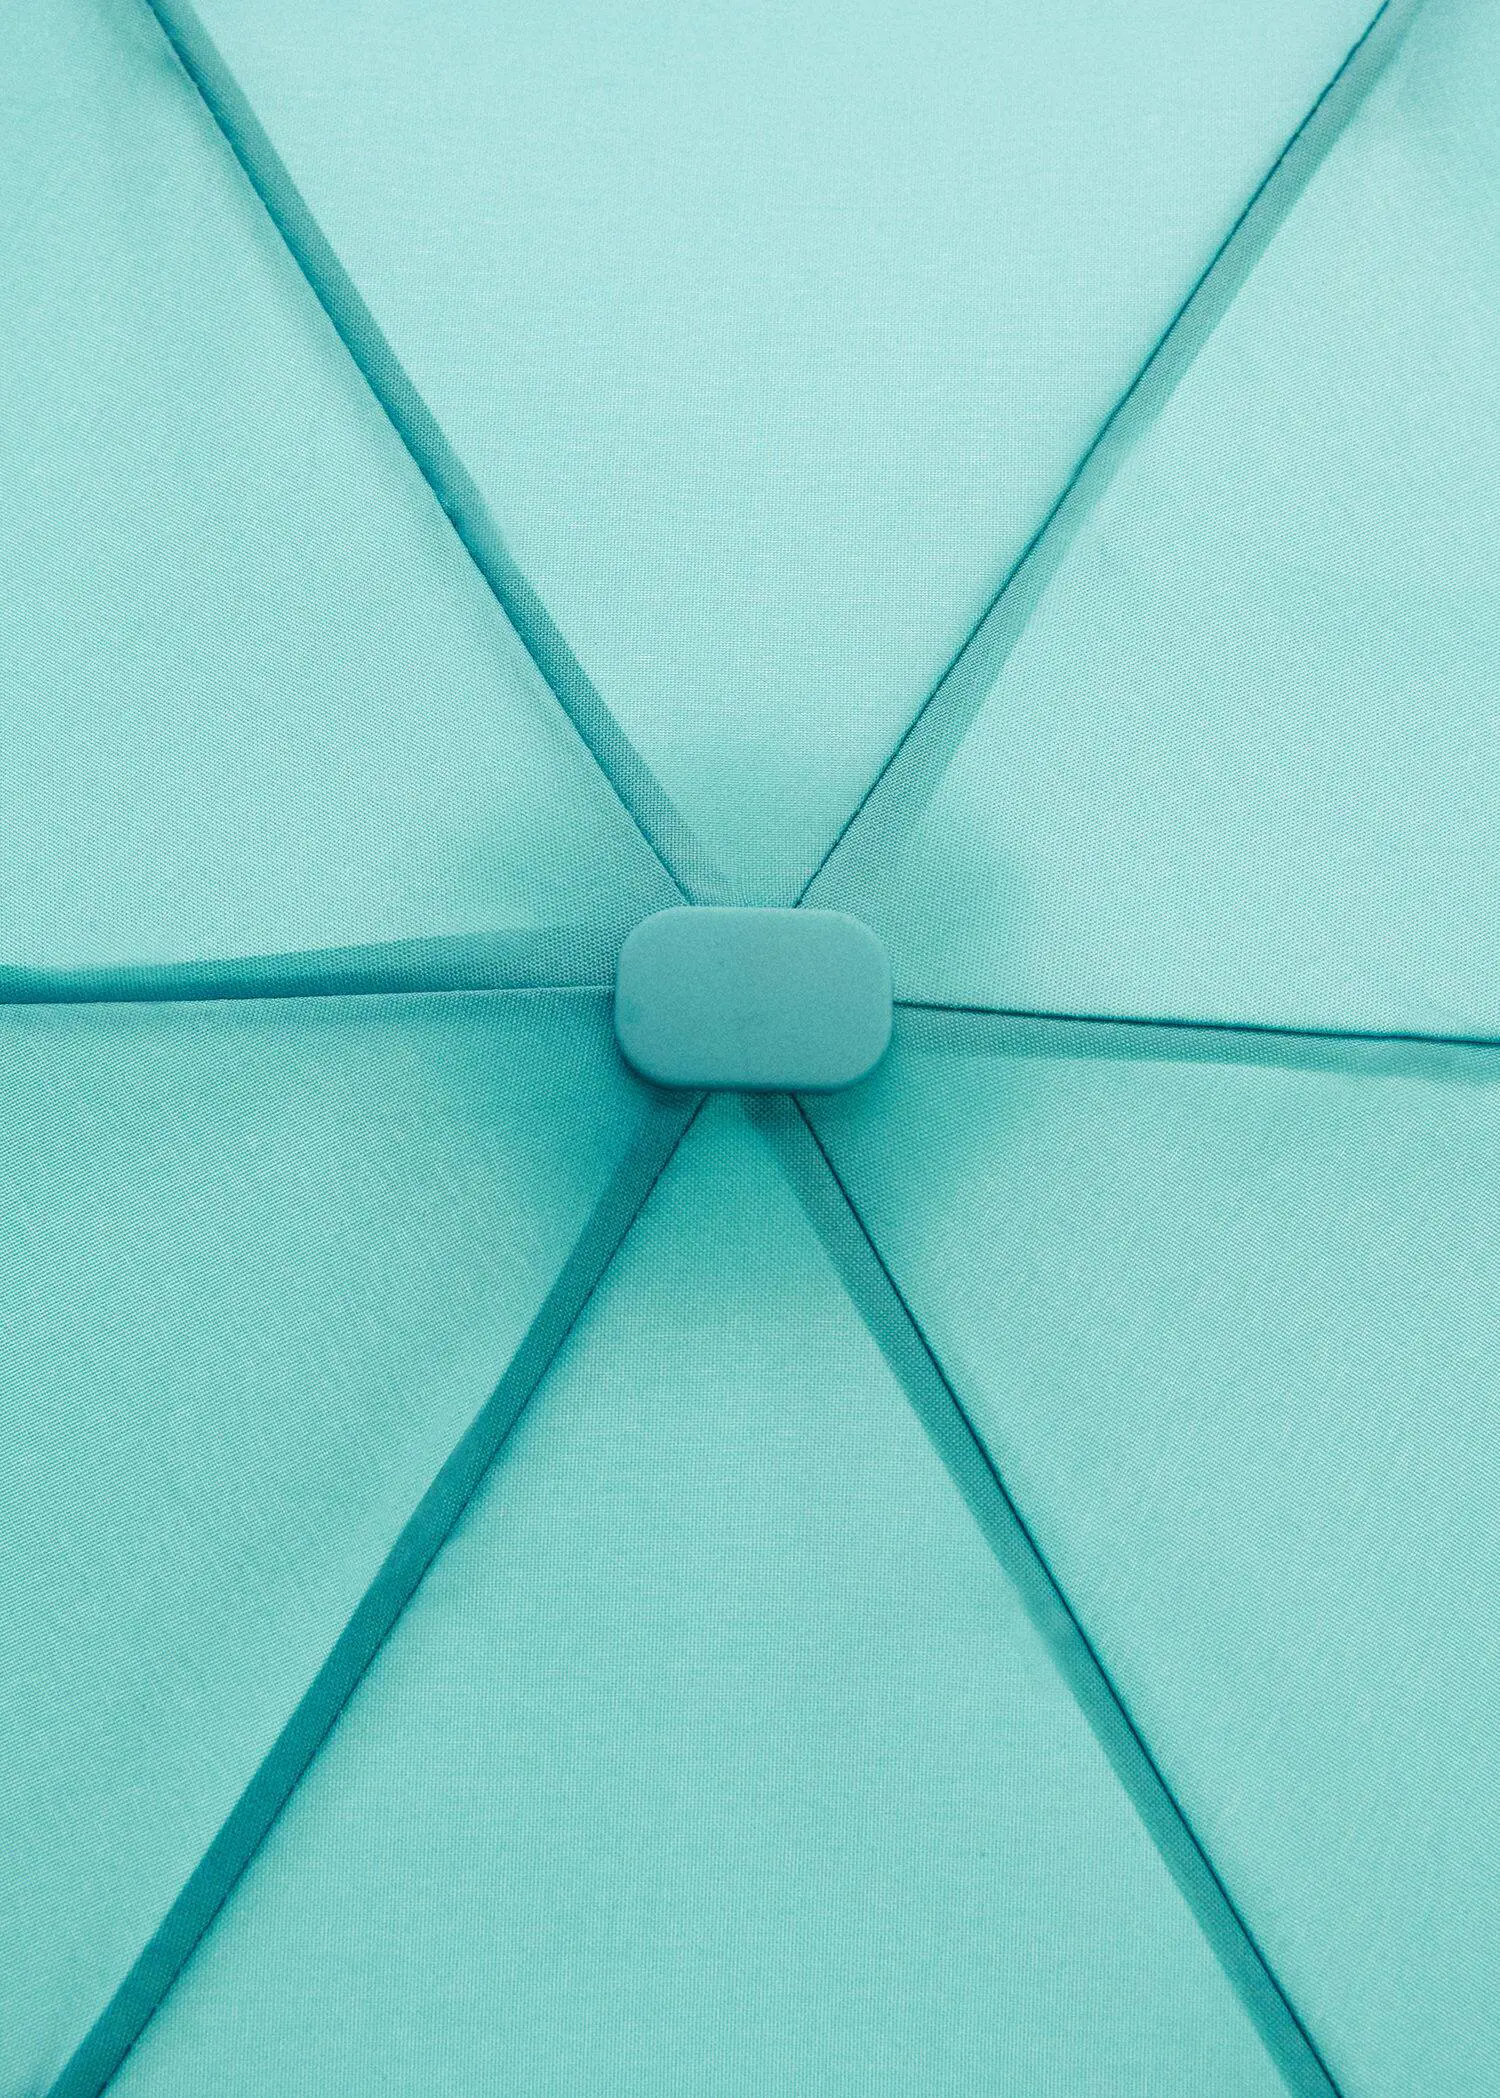 Mango Plain folding umbrella. a close-up view of the inside of a blue umbrella. 